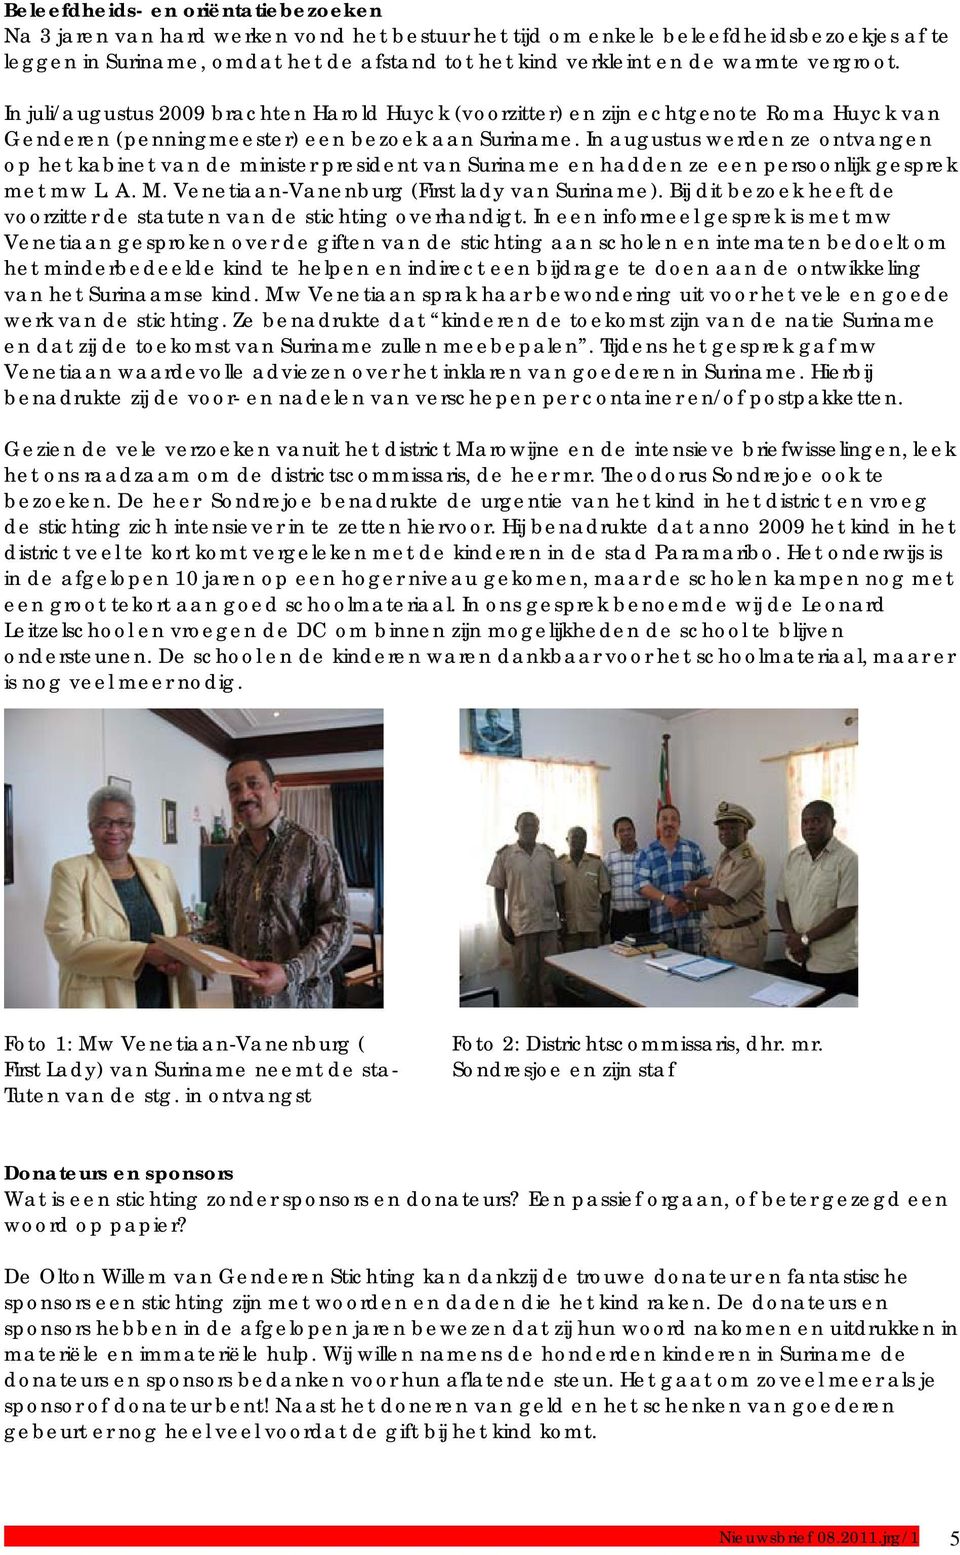 In augustus werden ze ontvangen op het kabinet van de minister president van Suriname en hadden ze een persoonlijk gesprek met mw L. A. M. Venetiaan-Vanenburg (First lady van Suriname).